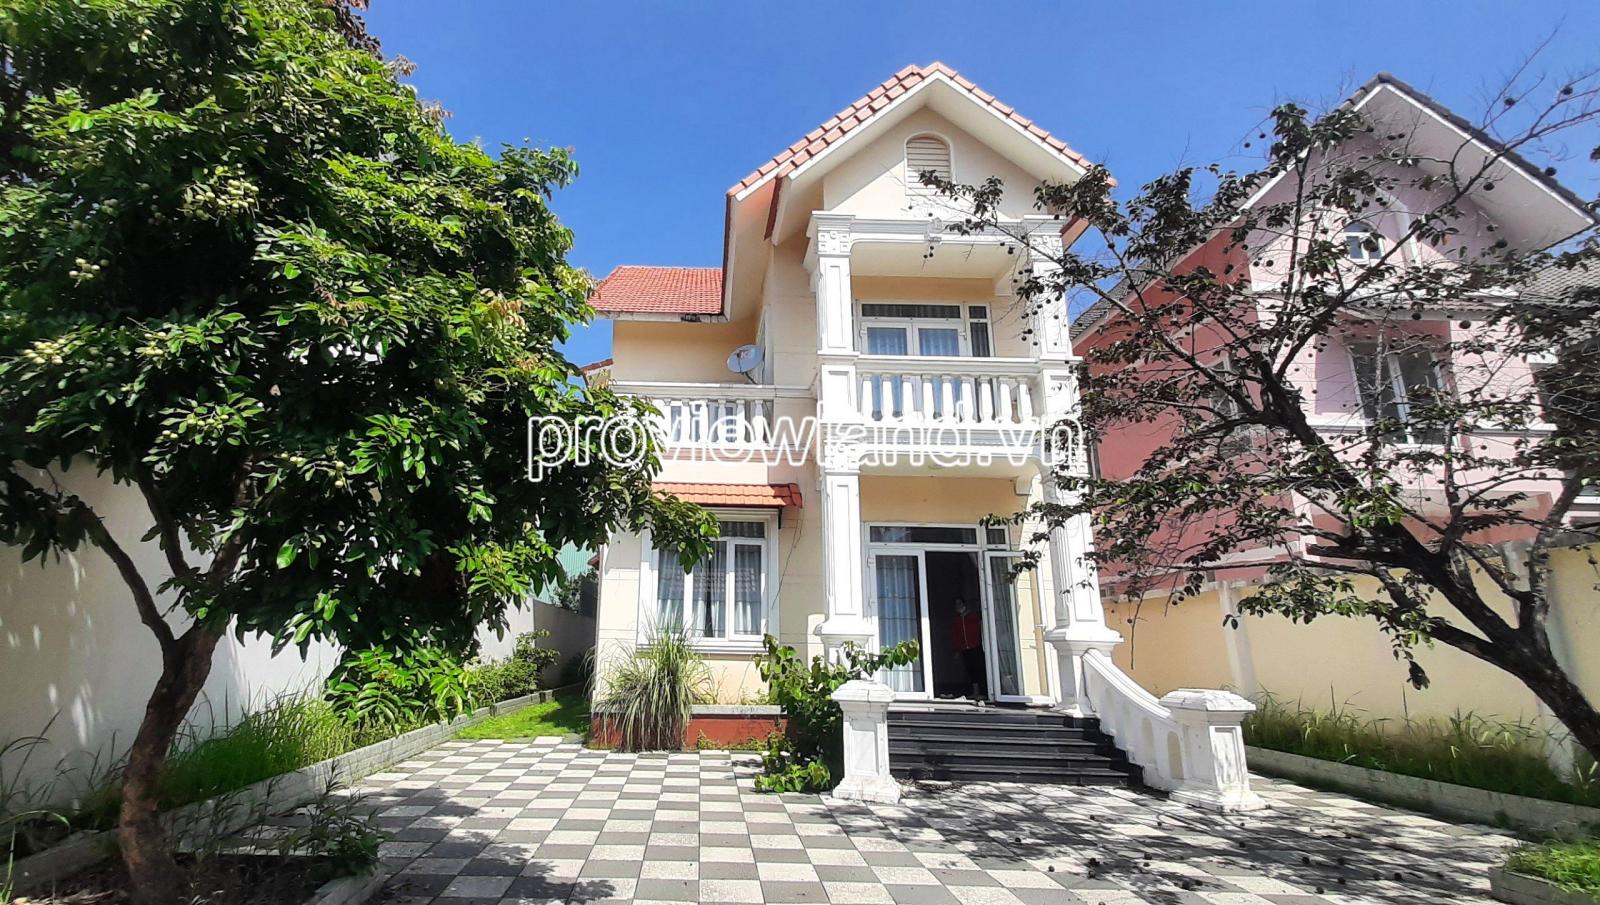 Cho thuê villa khu compound Phường Phú Hữu, Q9 cũ, 125m2 đất, 3 tầng + áp mái, 4PN + 5WC